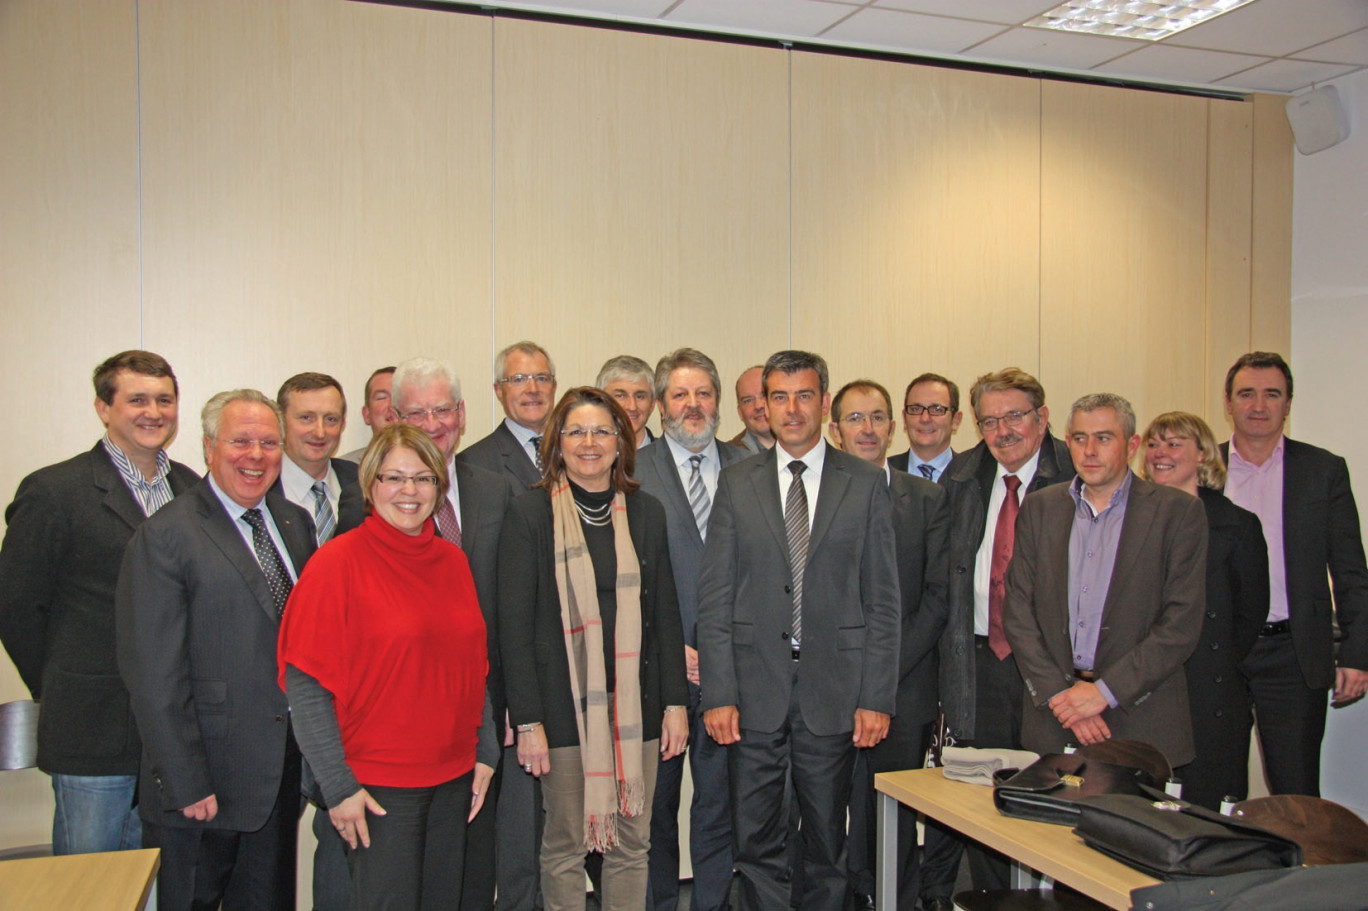 Les membres du conseil d’administration de la Chambre syndicale de la Fnaim 62 à l’issue de la réunion au cours de laquelle ils ont porté à leur tête Alain Potier.